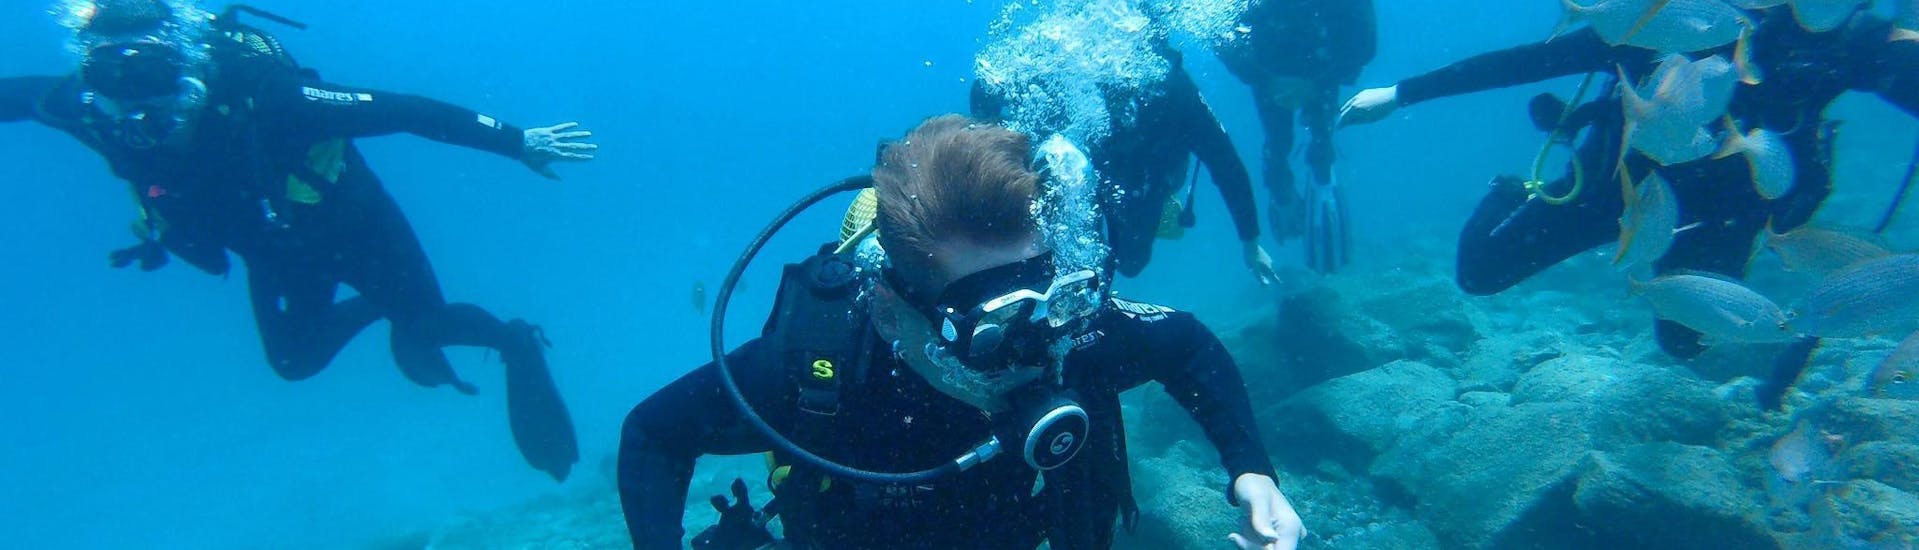 trial-scuba-diving-for-beginners-las-vistas-beach-big-fish-tenerife-hero